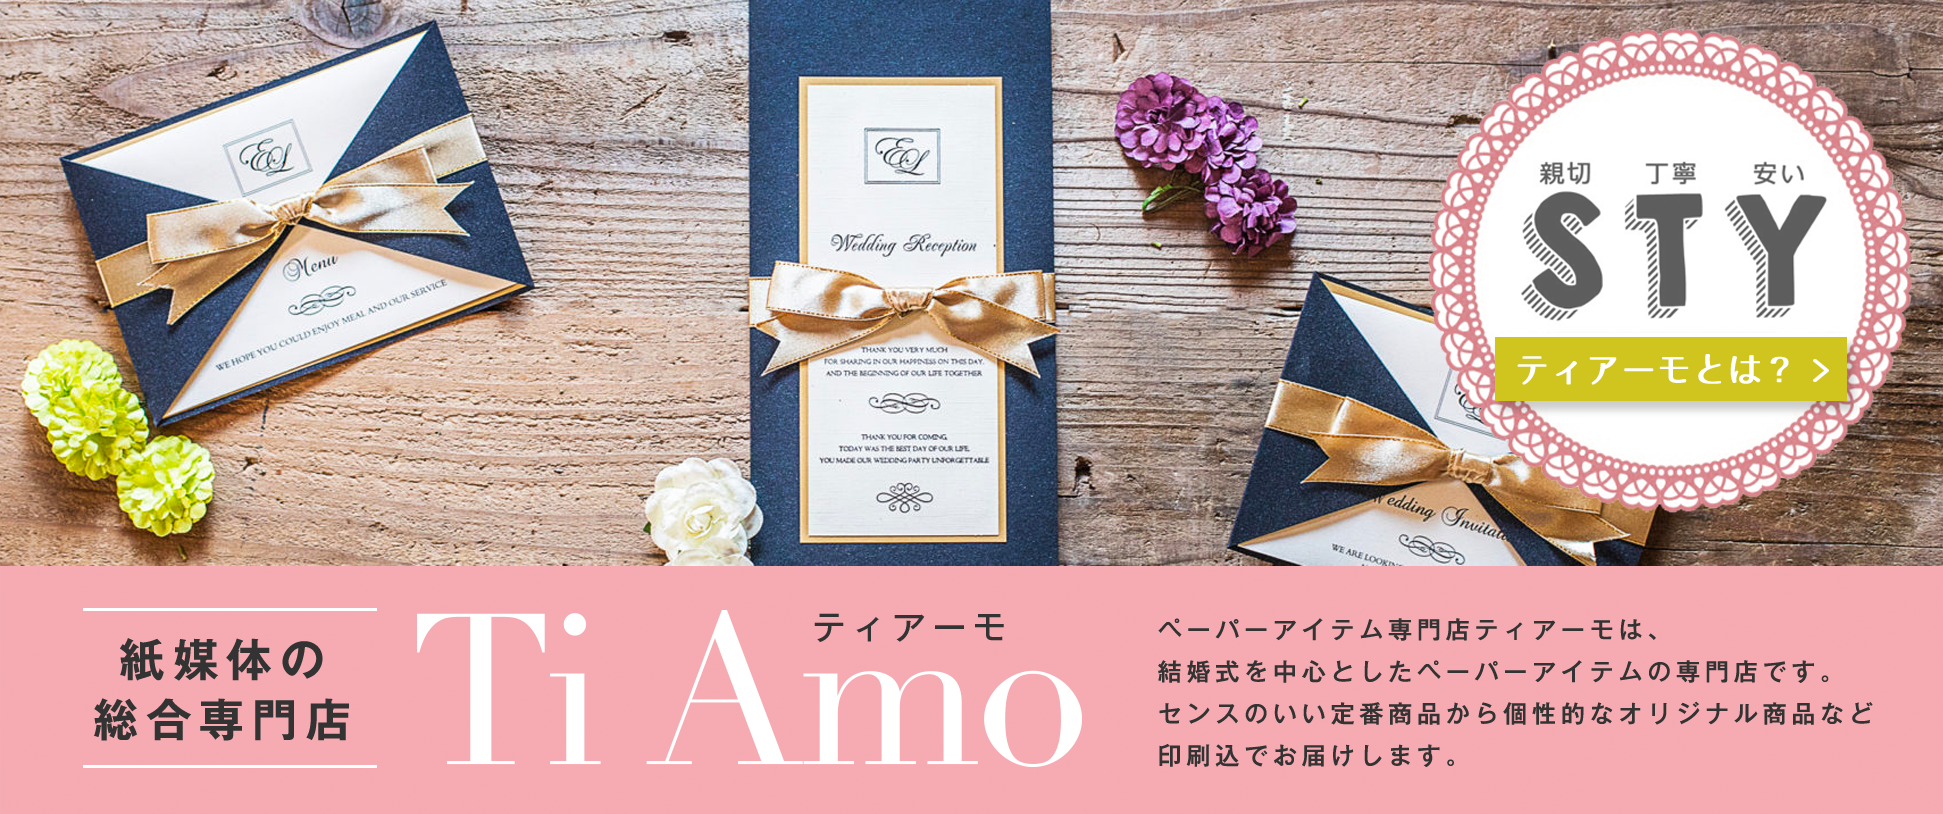 紙媒体の総合専門店 Ti Amo ペーパーアイテム専門店ティアーモは、結婚式を中心としたペーパーアイテムの専門店です。センスのいい定番商品から個性的なオリジナル商品など印刷込でお届けします。